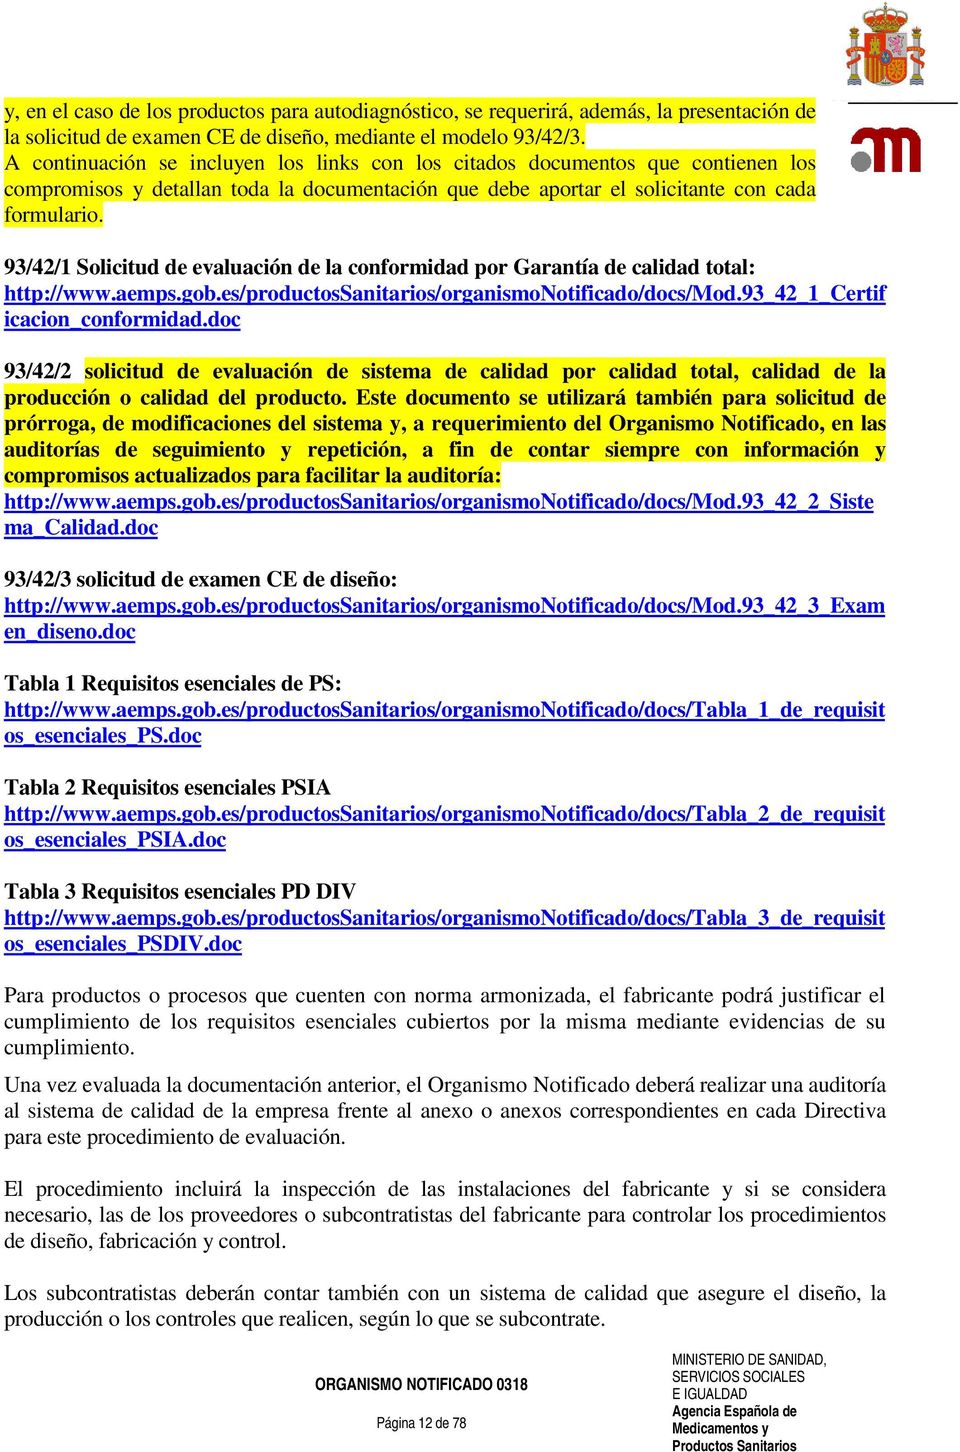 93/42/1 Solicitud de evaluación de la conformidad por Garantía de calidad total: http://www.aemps.gob.es/productossanitarios/organismonotificado/docs/mod.93_42_1_certif icacion_conformidad.